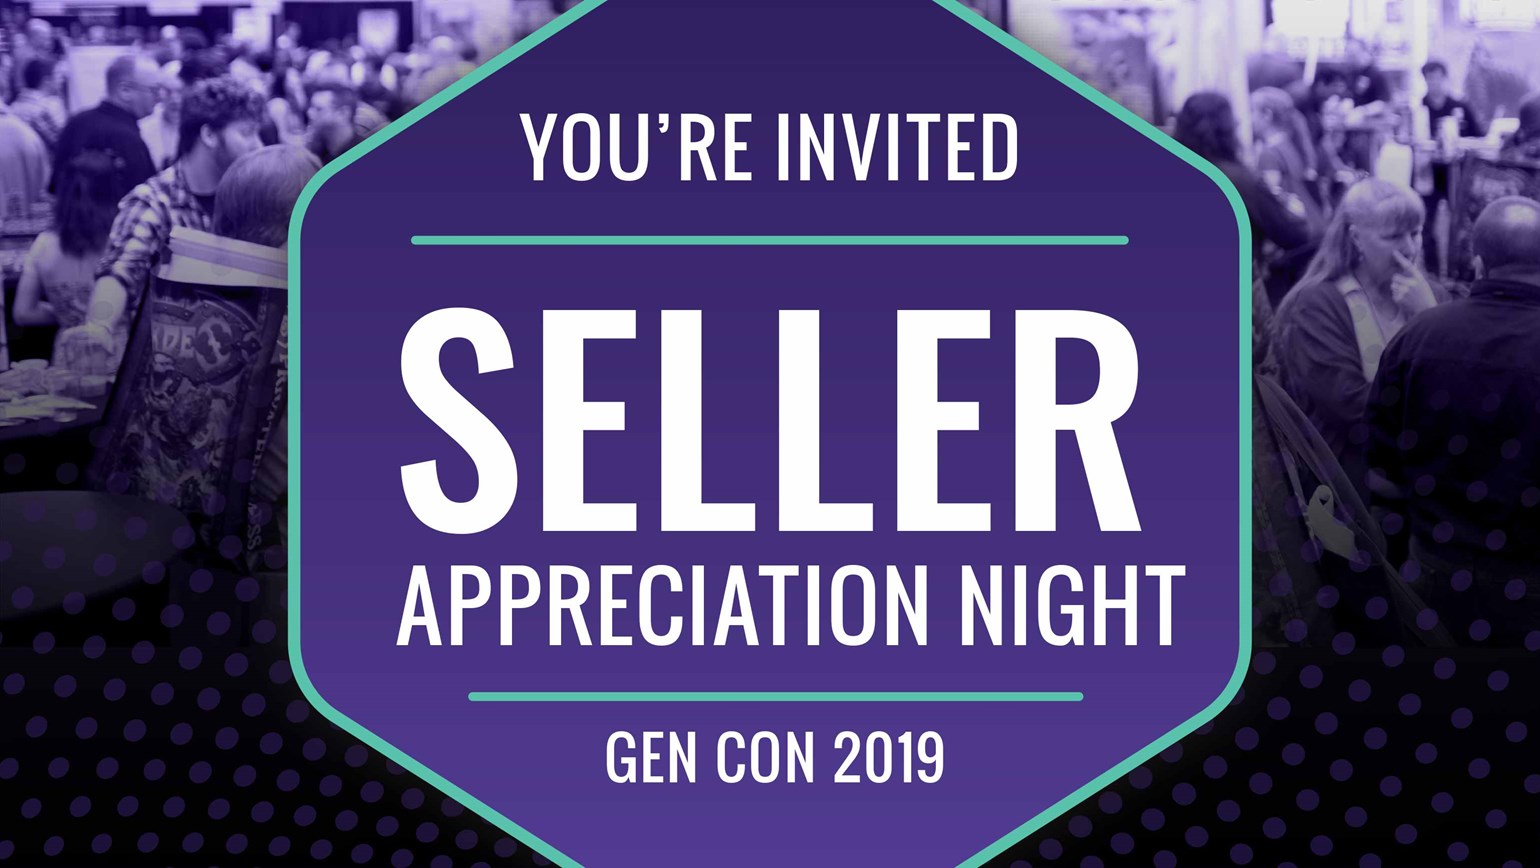 Let’s Meet at Gen Con! RSVP for Seller Appreciation Night